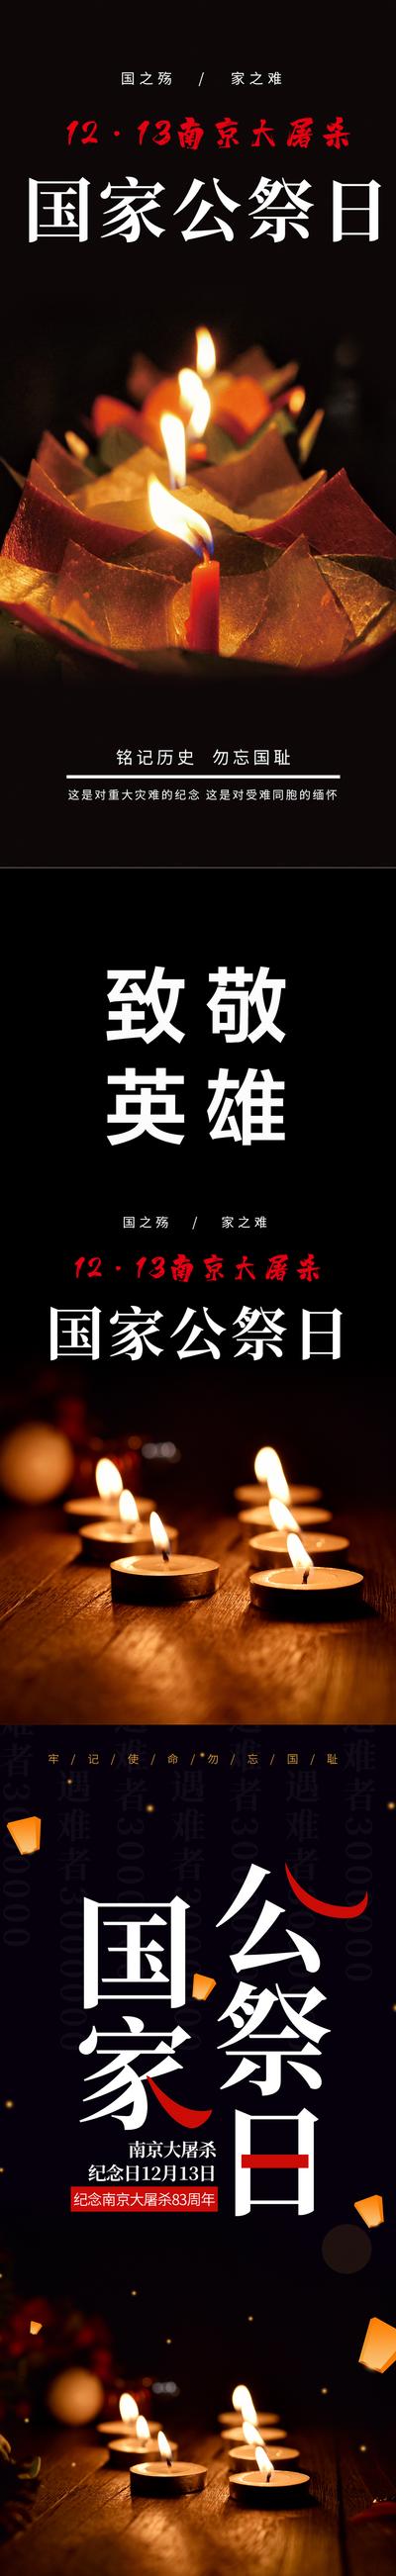 【南门网】海报 公历节日 1213 国家公祭日 南京大屠杀 烈士 默哀